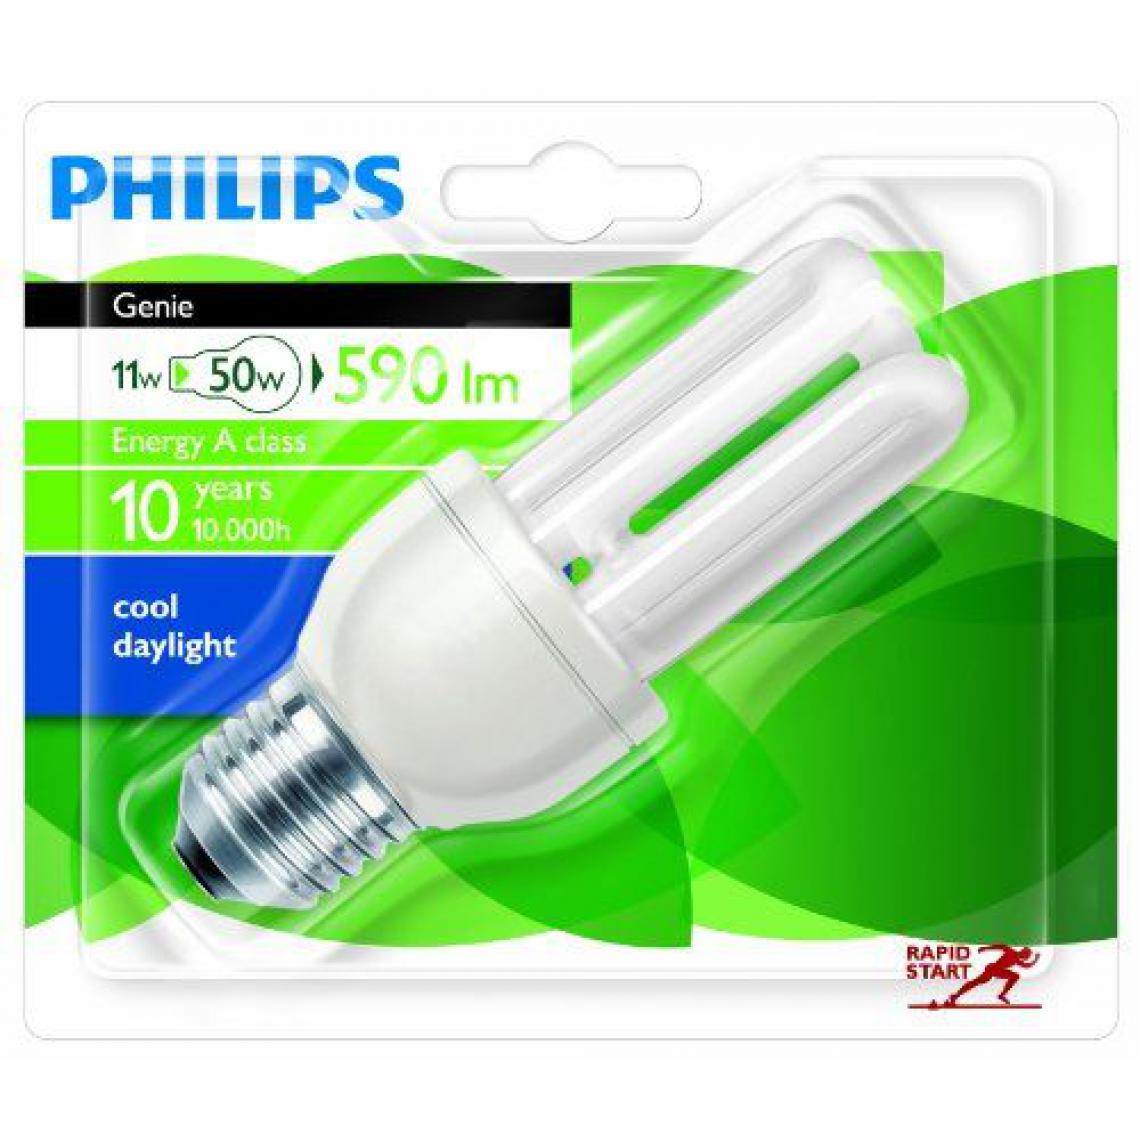 Philips - Philips 929689413609 Génie 11 W E27 CDL 1BL ampoule à Economie d'énergie 230V - Ampoules LED